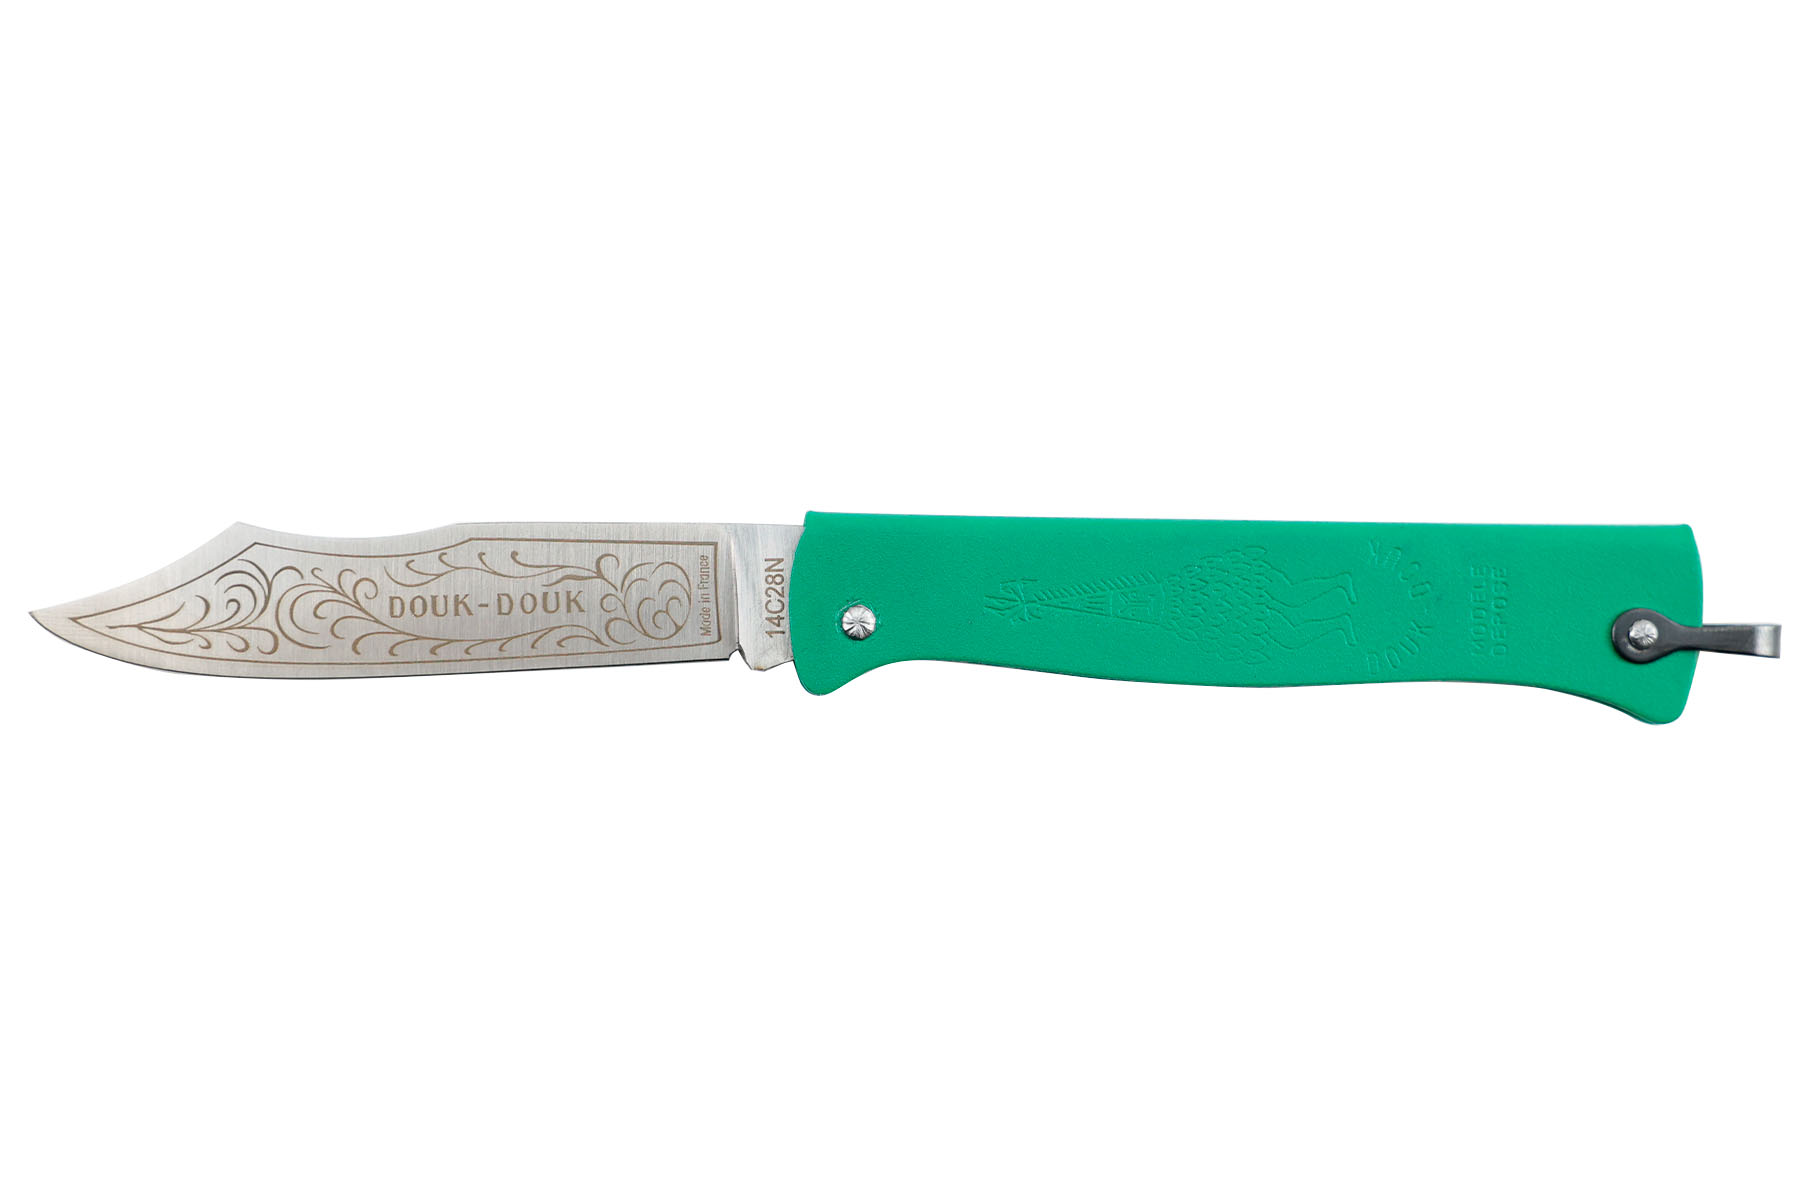 Couteau pliant Douk-Douk par Cognet couleur vert - Nouvelle version